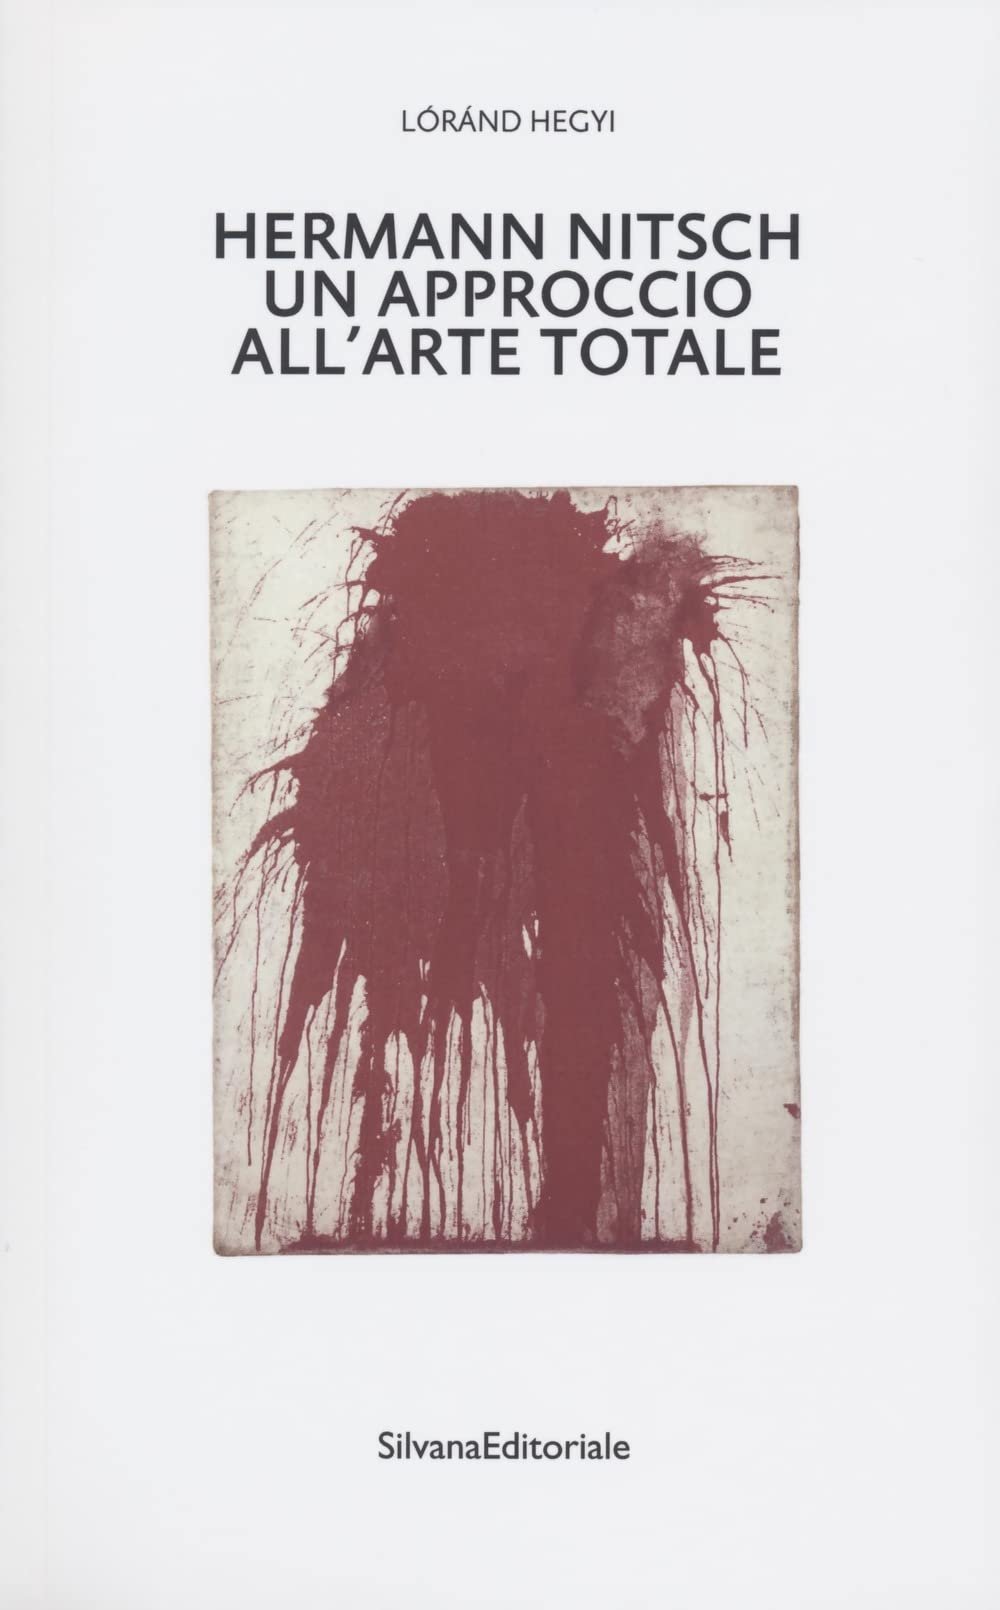 Lóránd Hegyi – Hermann Nitsch. Un approccio all'arte totale (Silvana Editoriale, Cinisello Balsamo 2022)